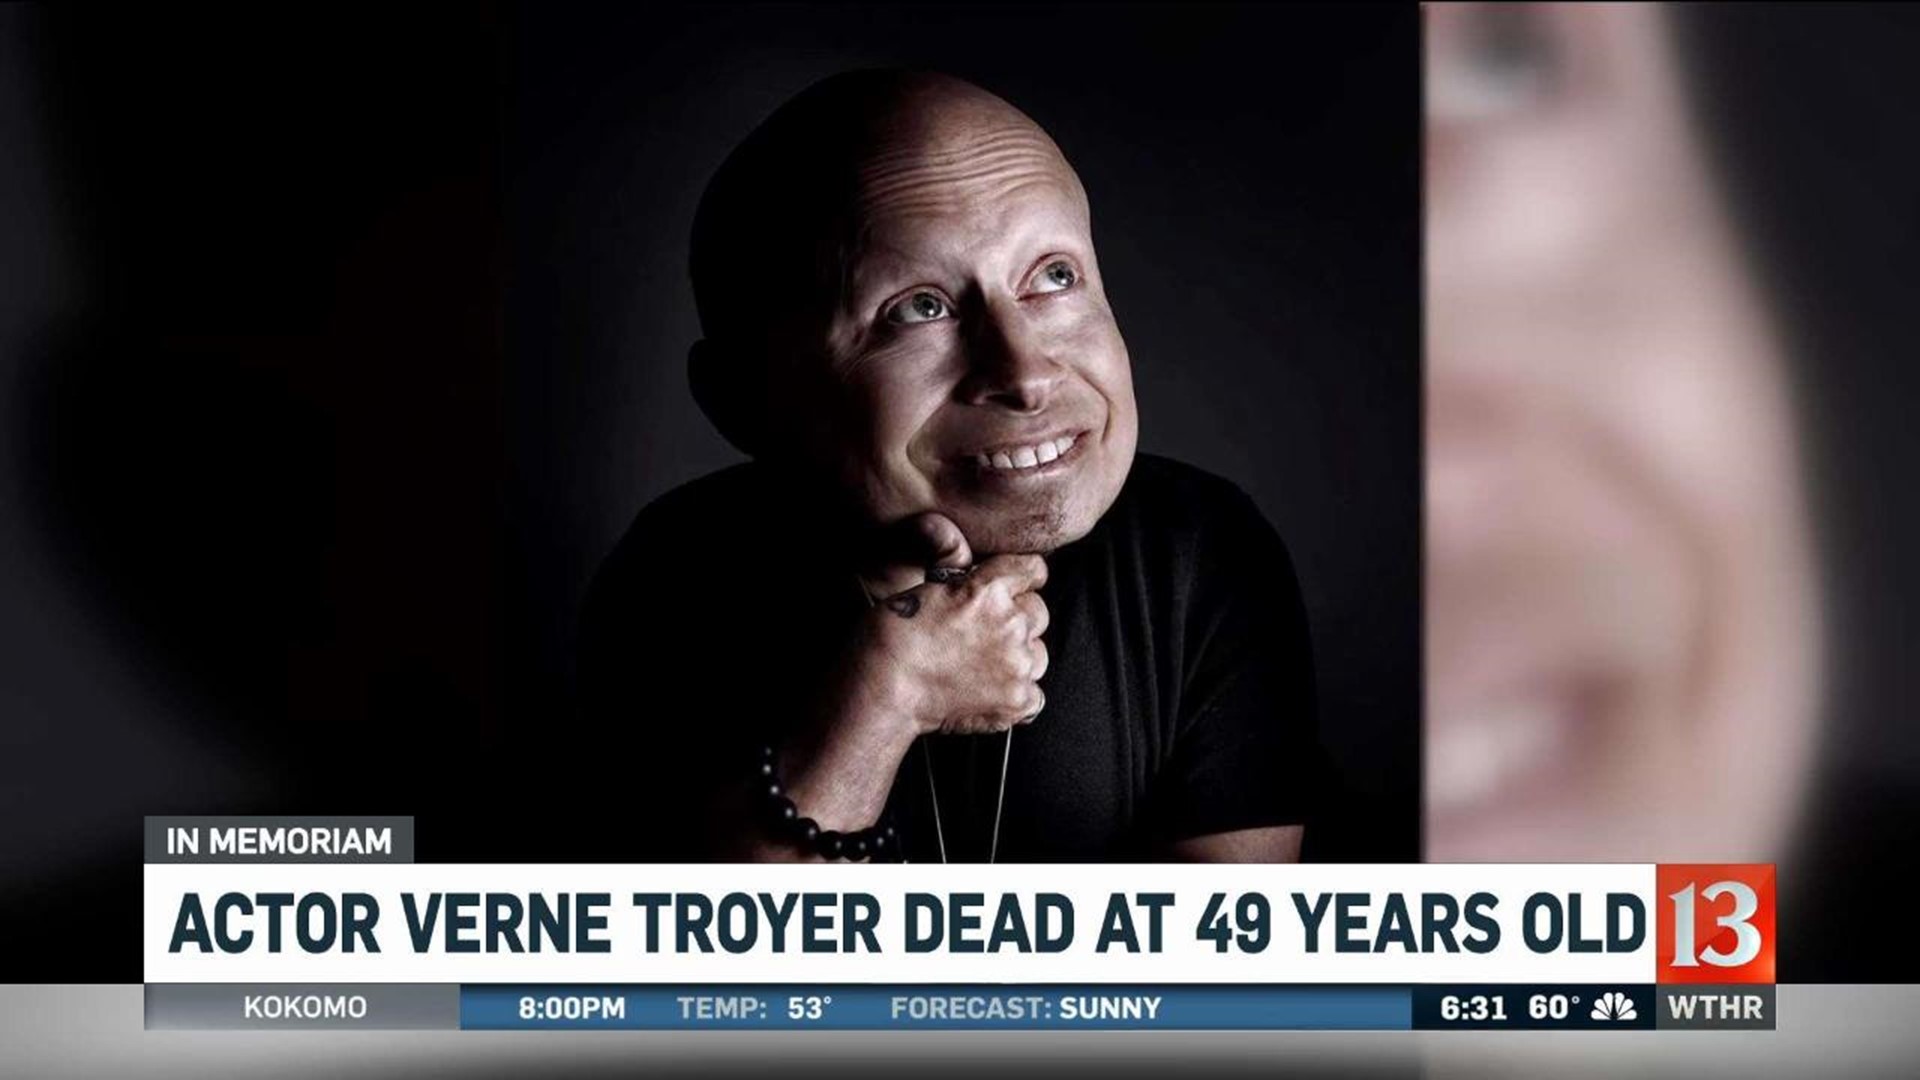 Verne Troyer Dies at 49 Years Old